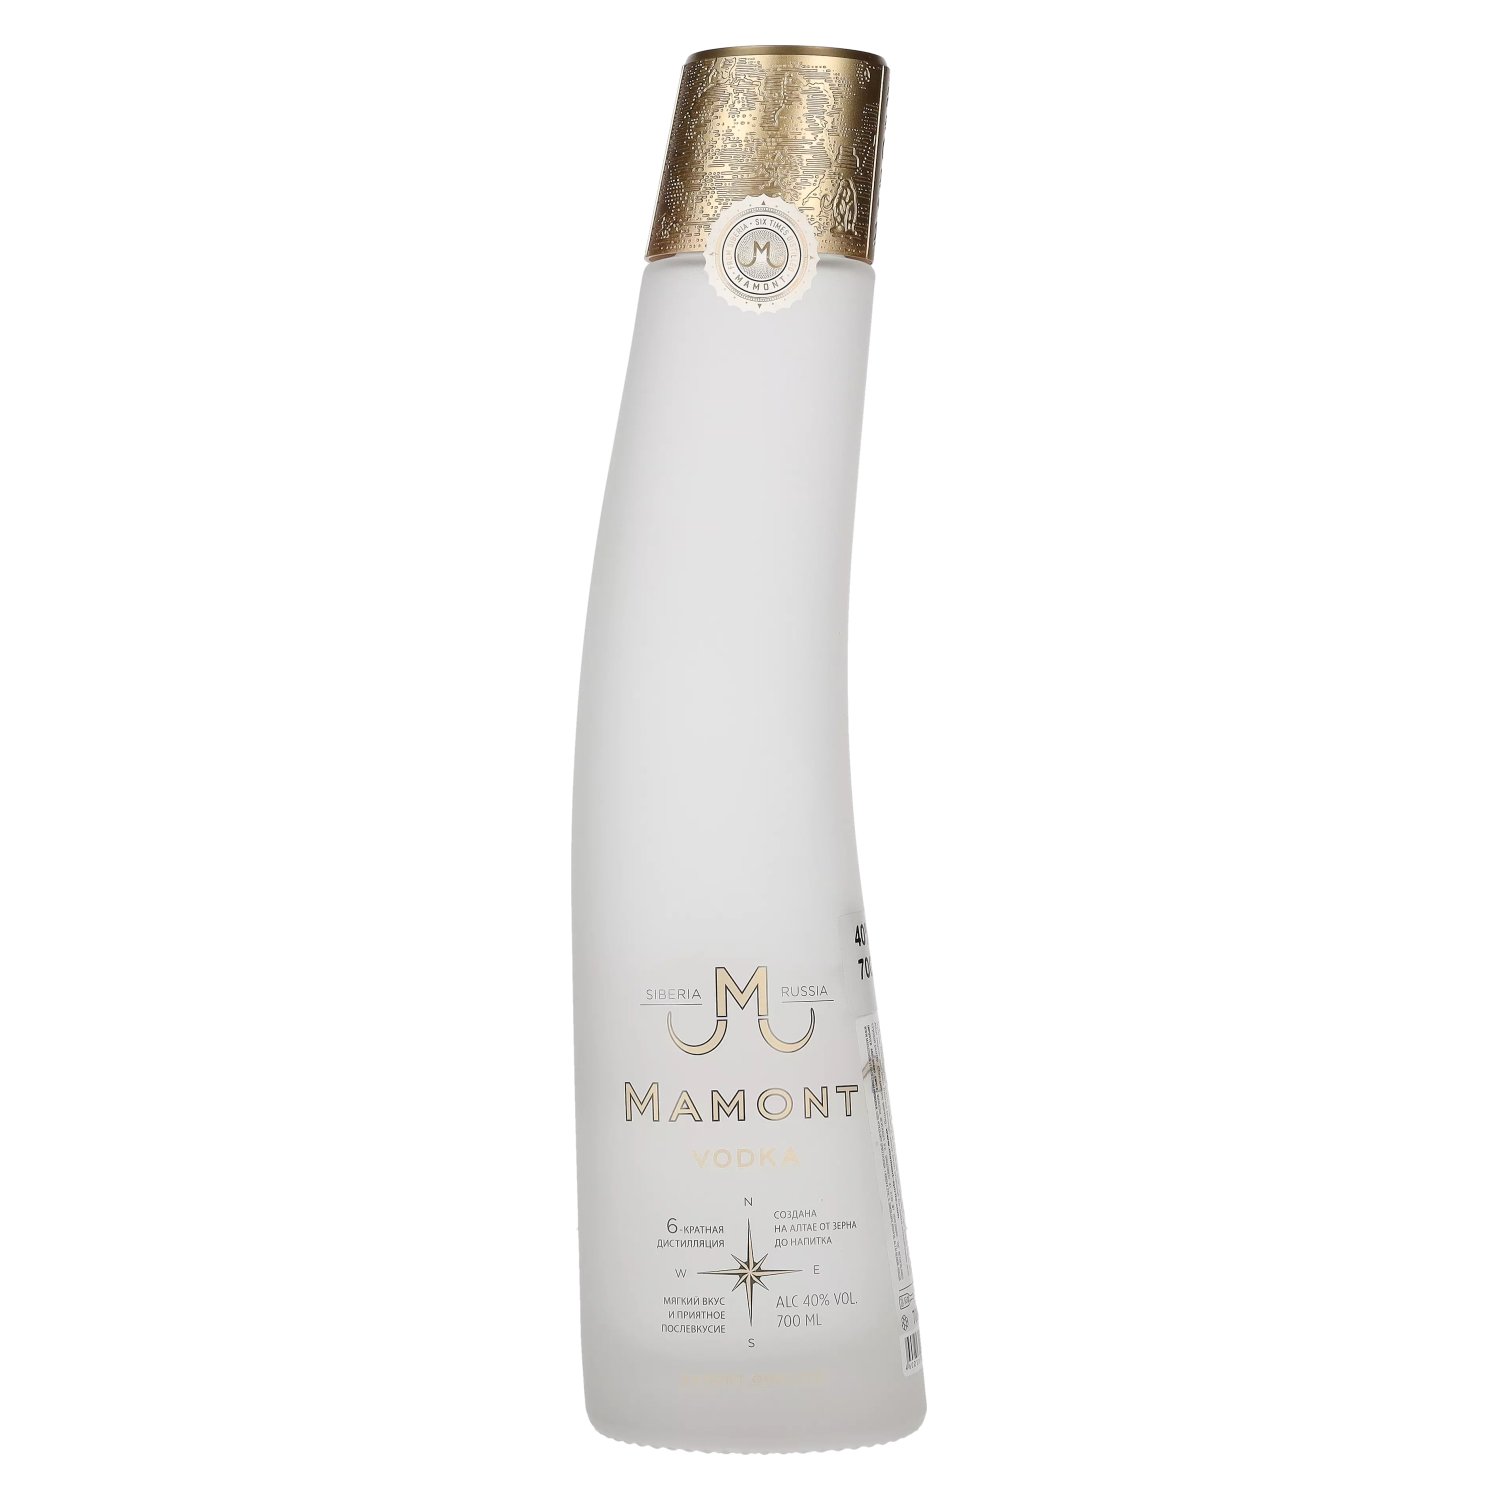 Mamont vodka 40% 0,7L (čistá fľaša)